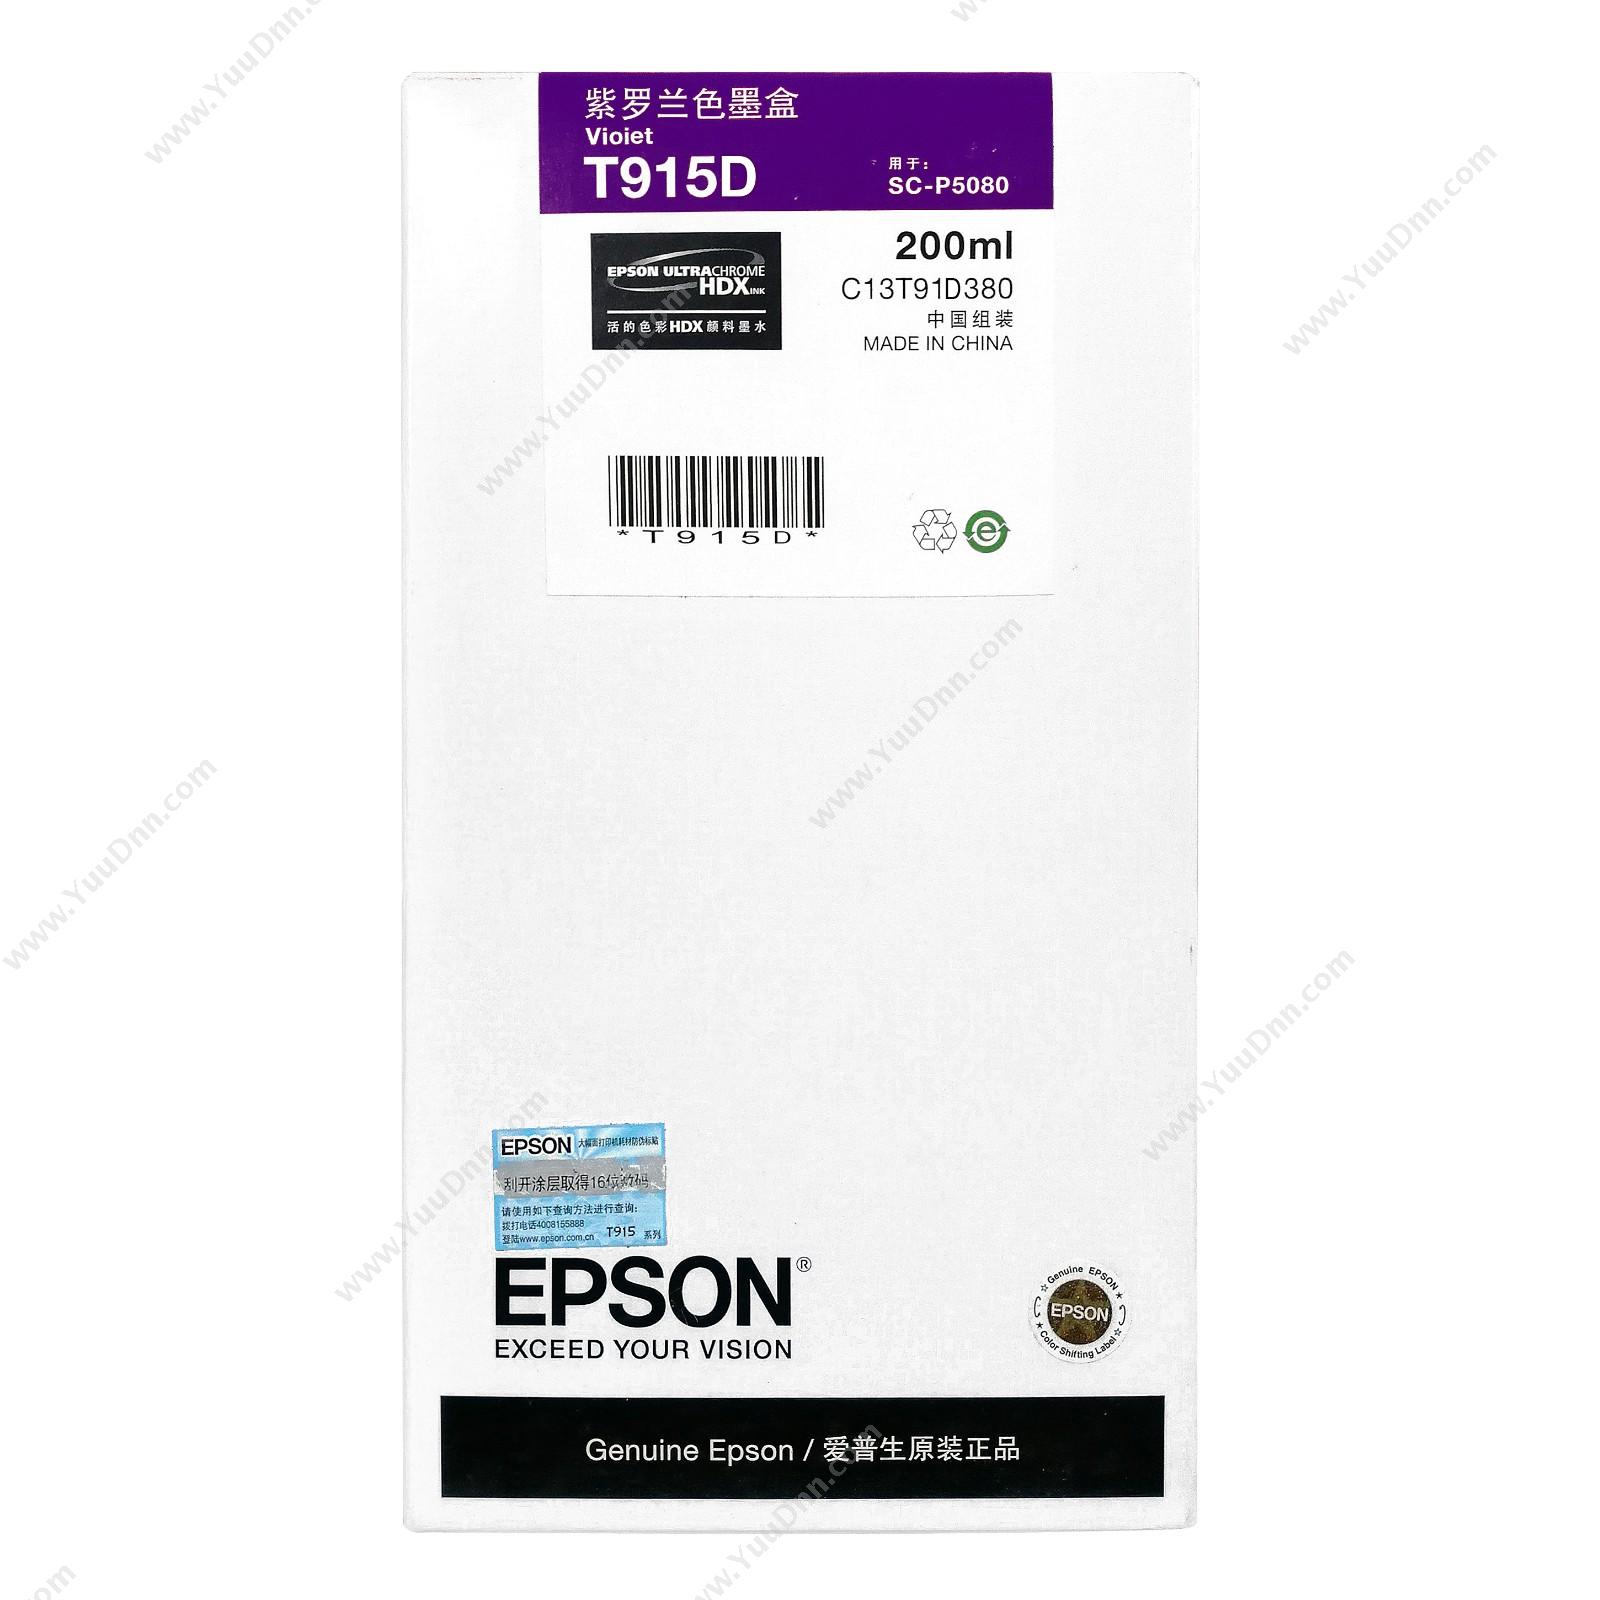 爱普生 EpsonP5080紫罗兰色200ml(C13T915D80)墨盒